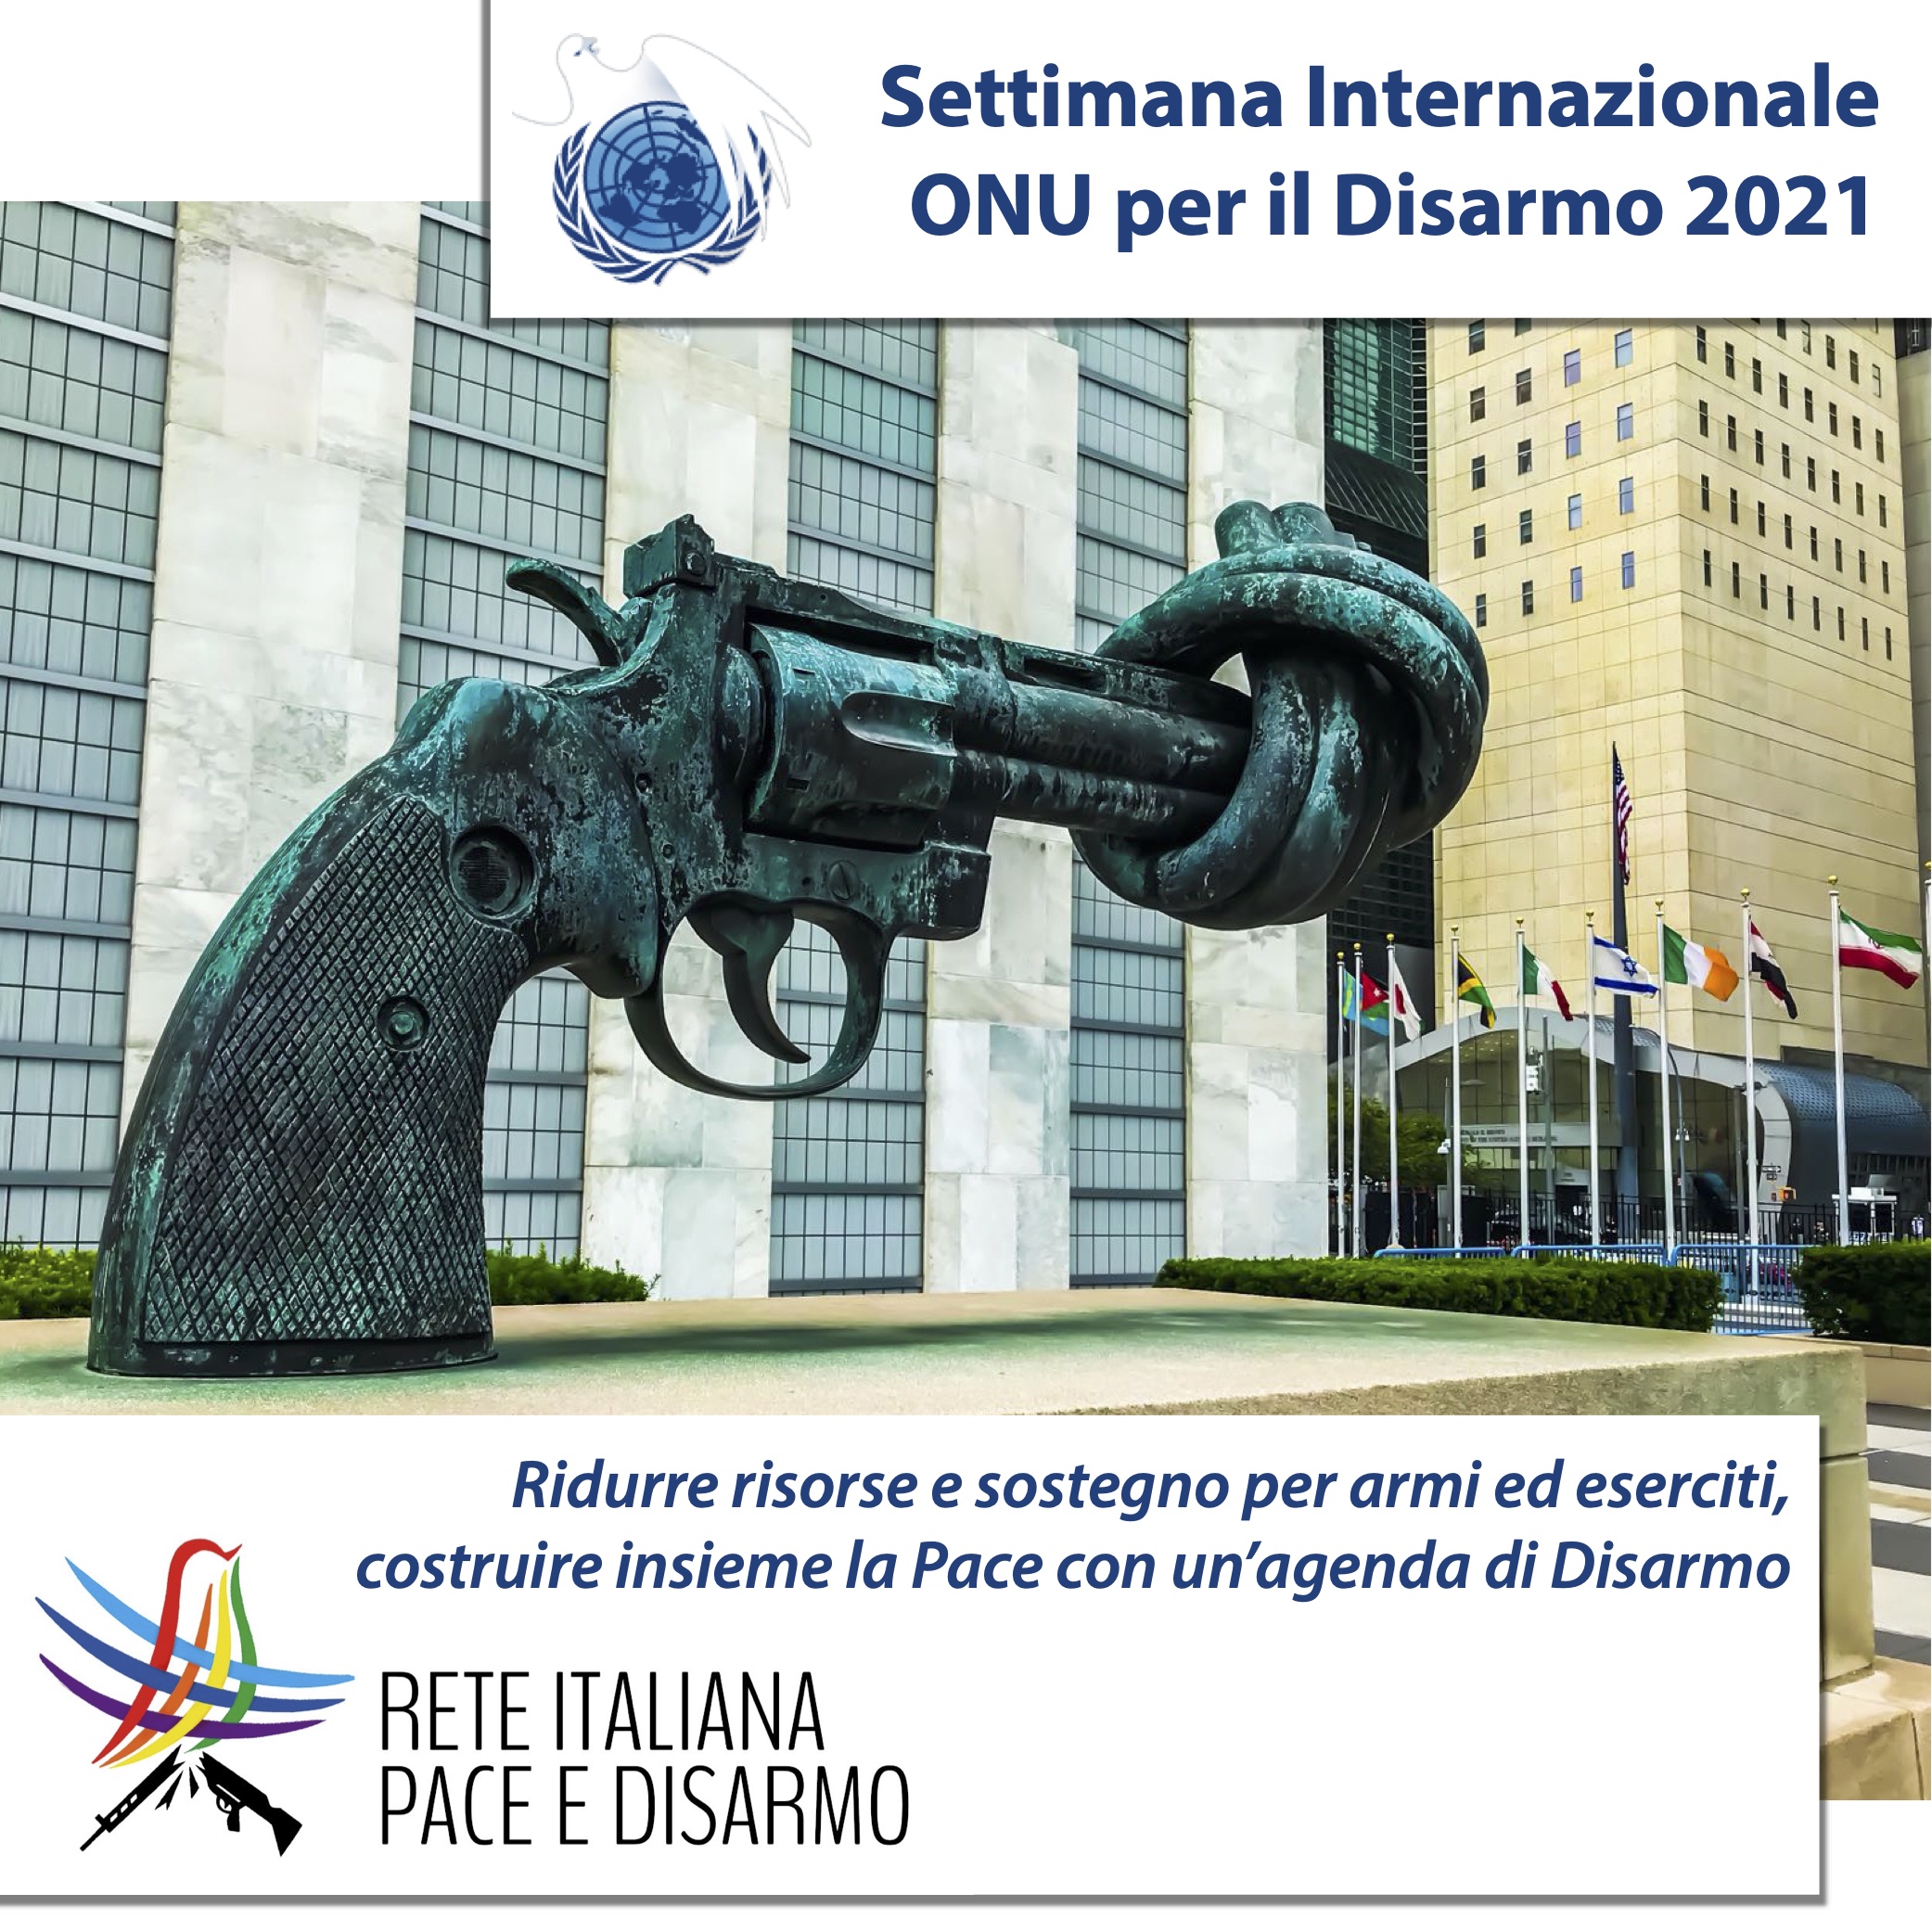 Dal 24 ottobre la Settimana ONU per il Disarmo: a Torino una riflessione sulla necessità di un’Agenda per la Pace